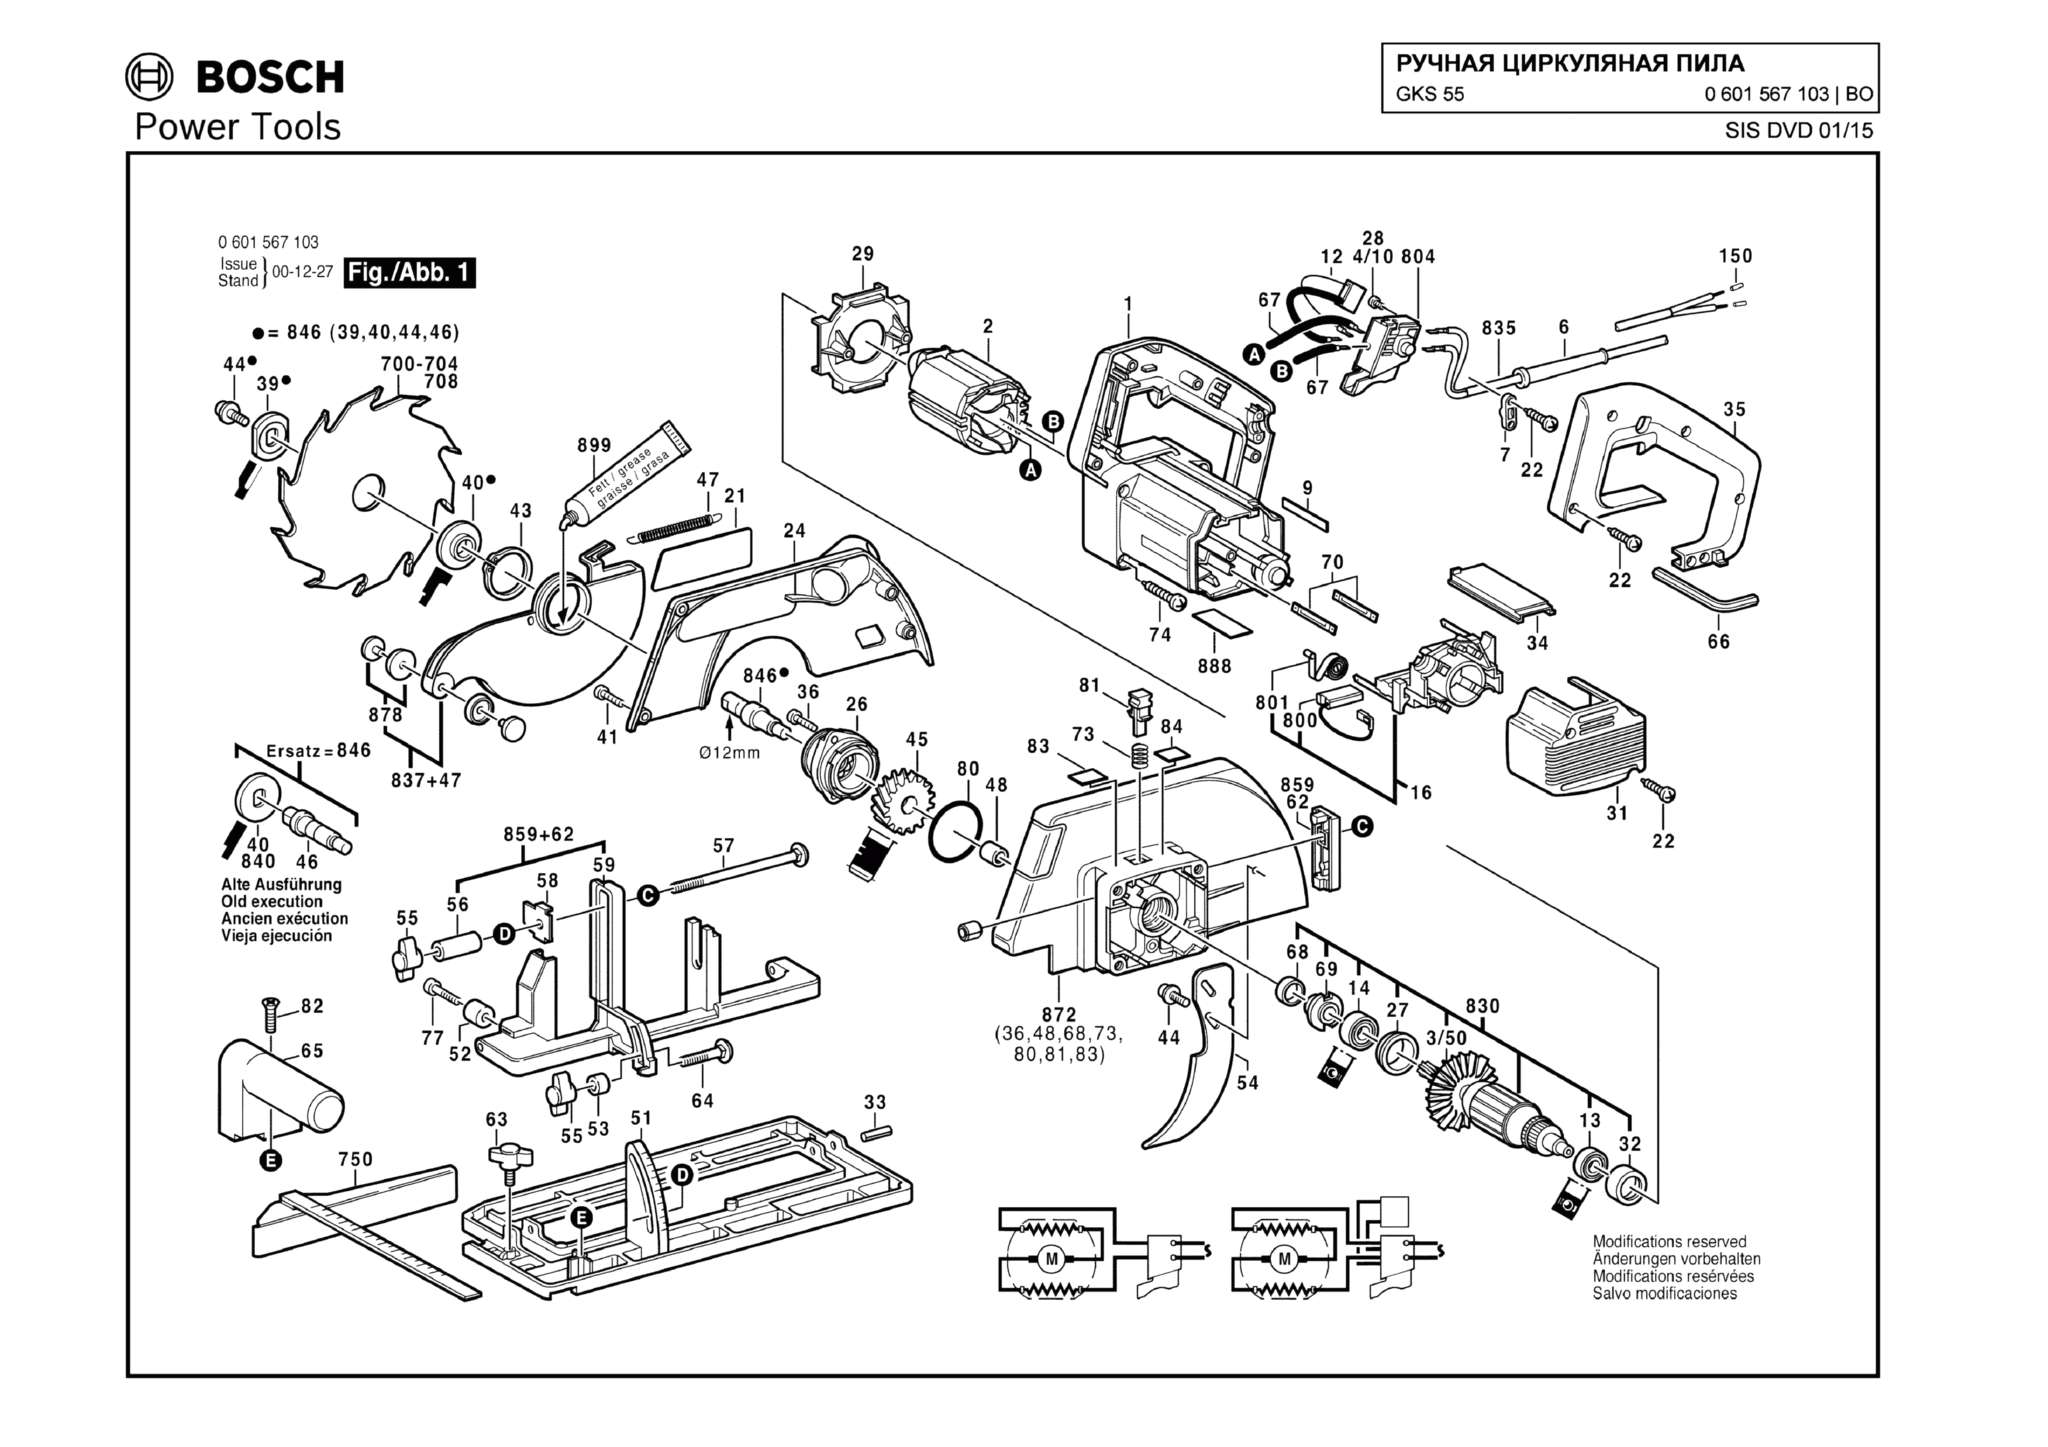 Запчасти, схема и деталировка Bosch GKS 55 (ТИП 0601567103)